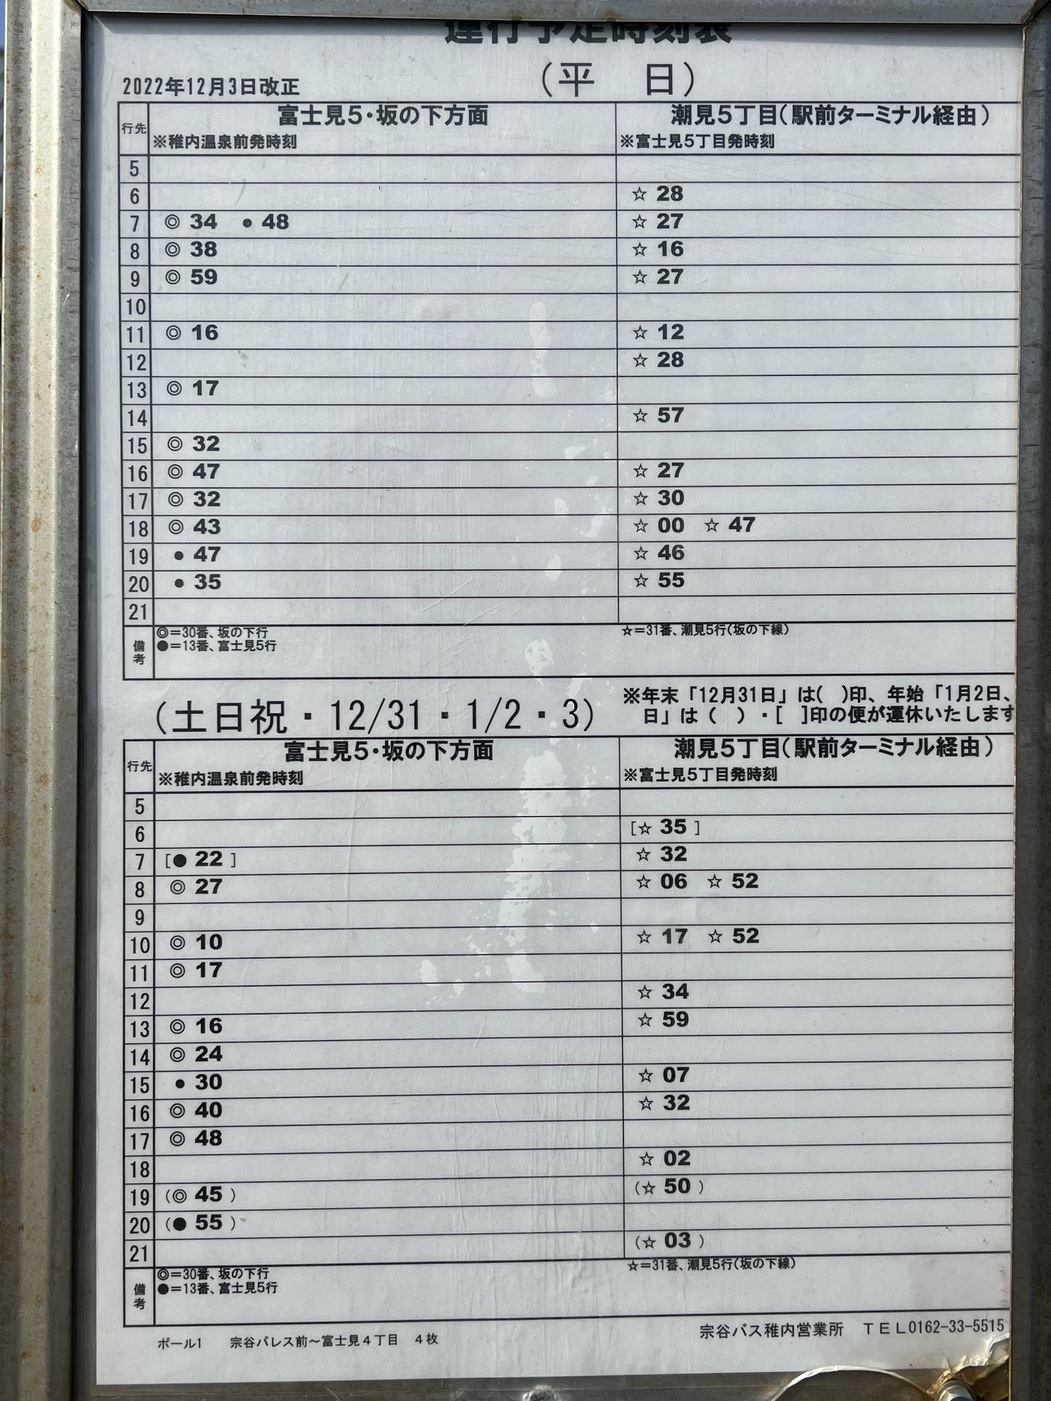 バス時刻表